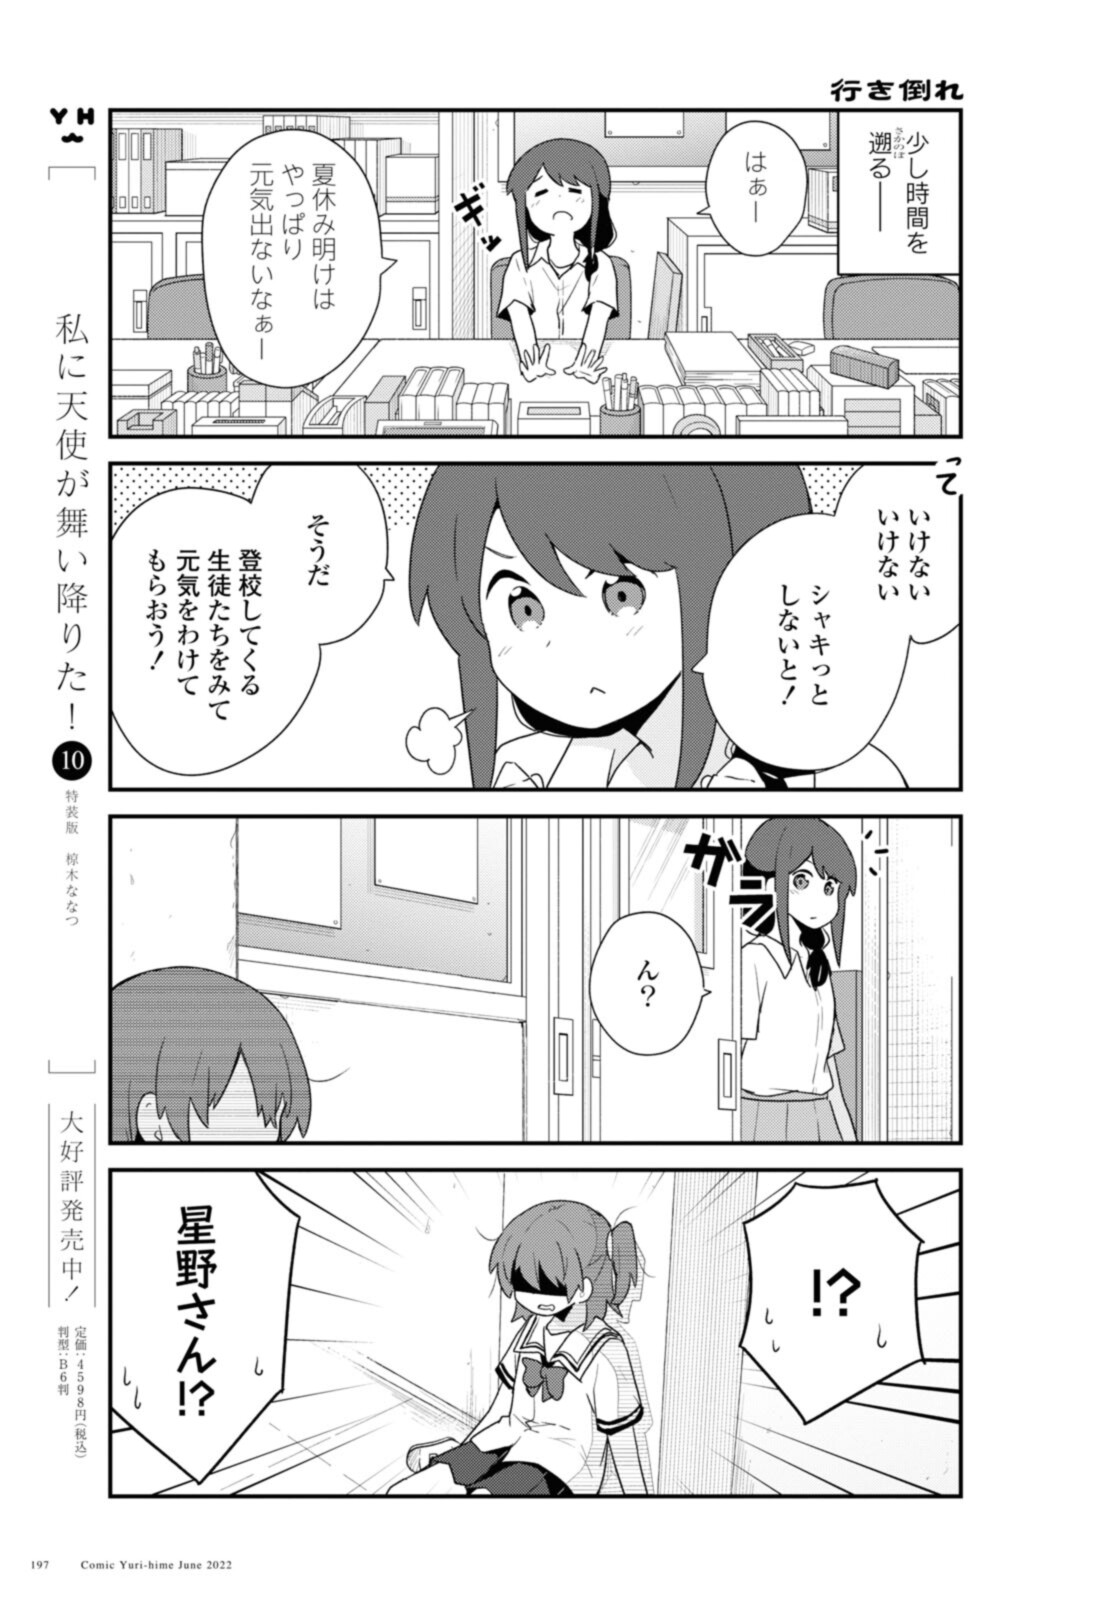 Watashi ni Tenshi ga Maiorita! - Chapter 96 - Page 3